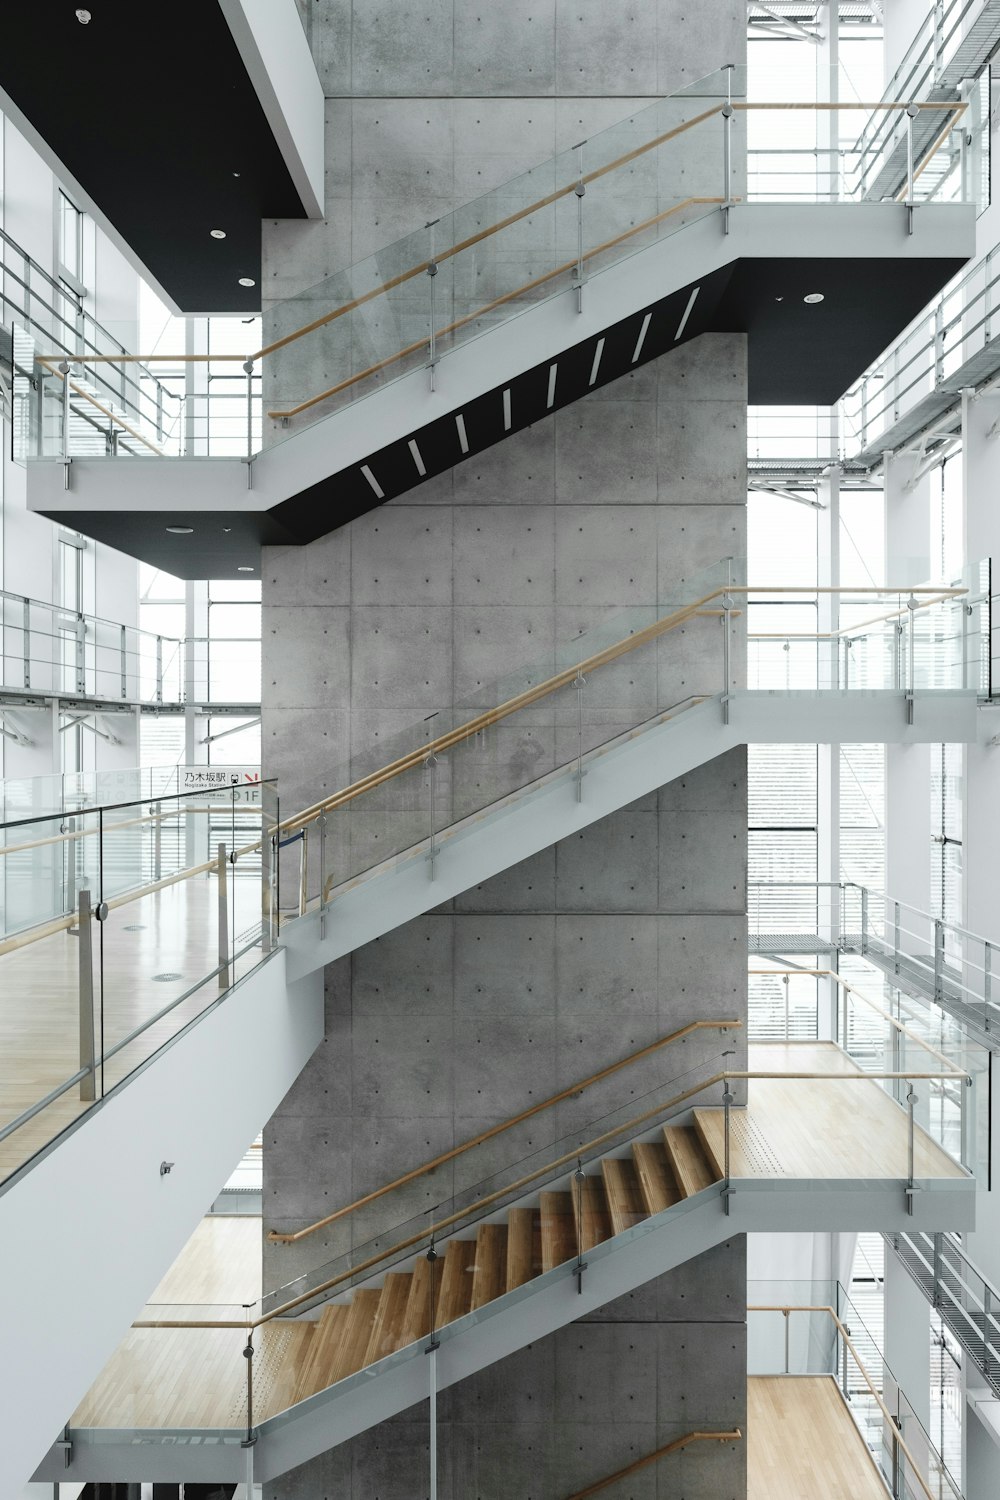 Architekturfotografie eines Gebäudes mit Treppe